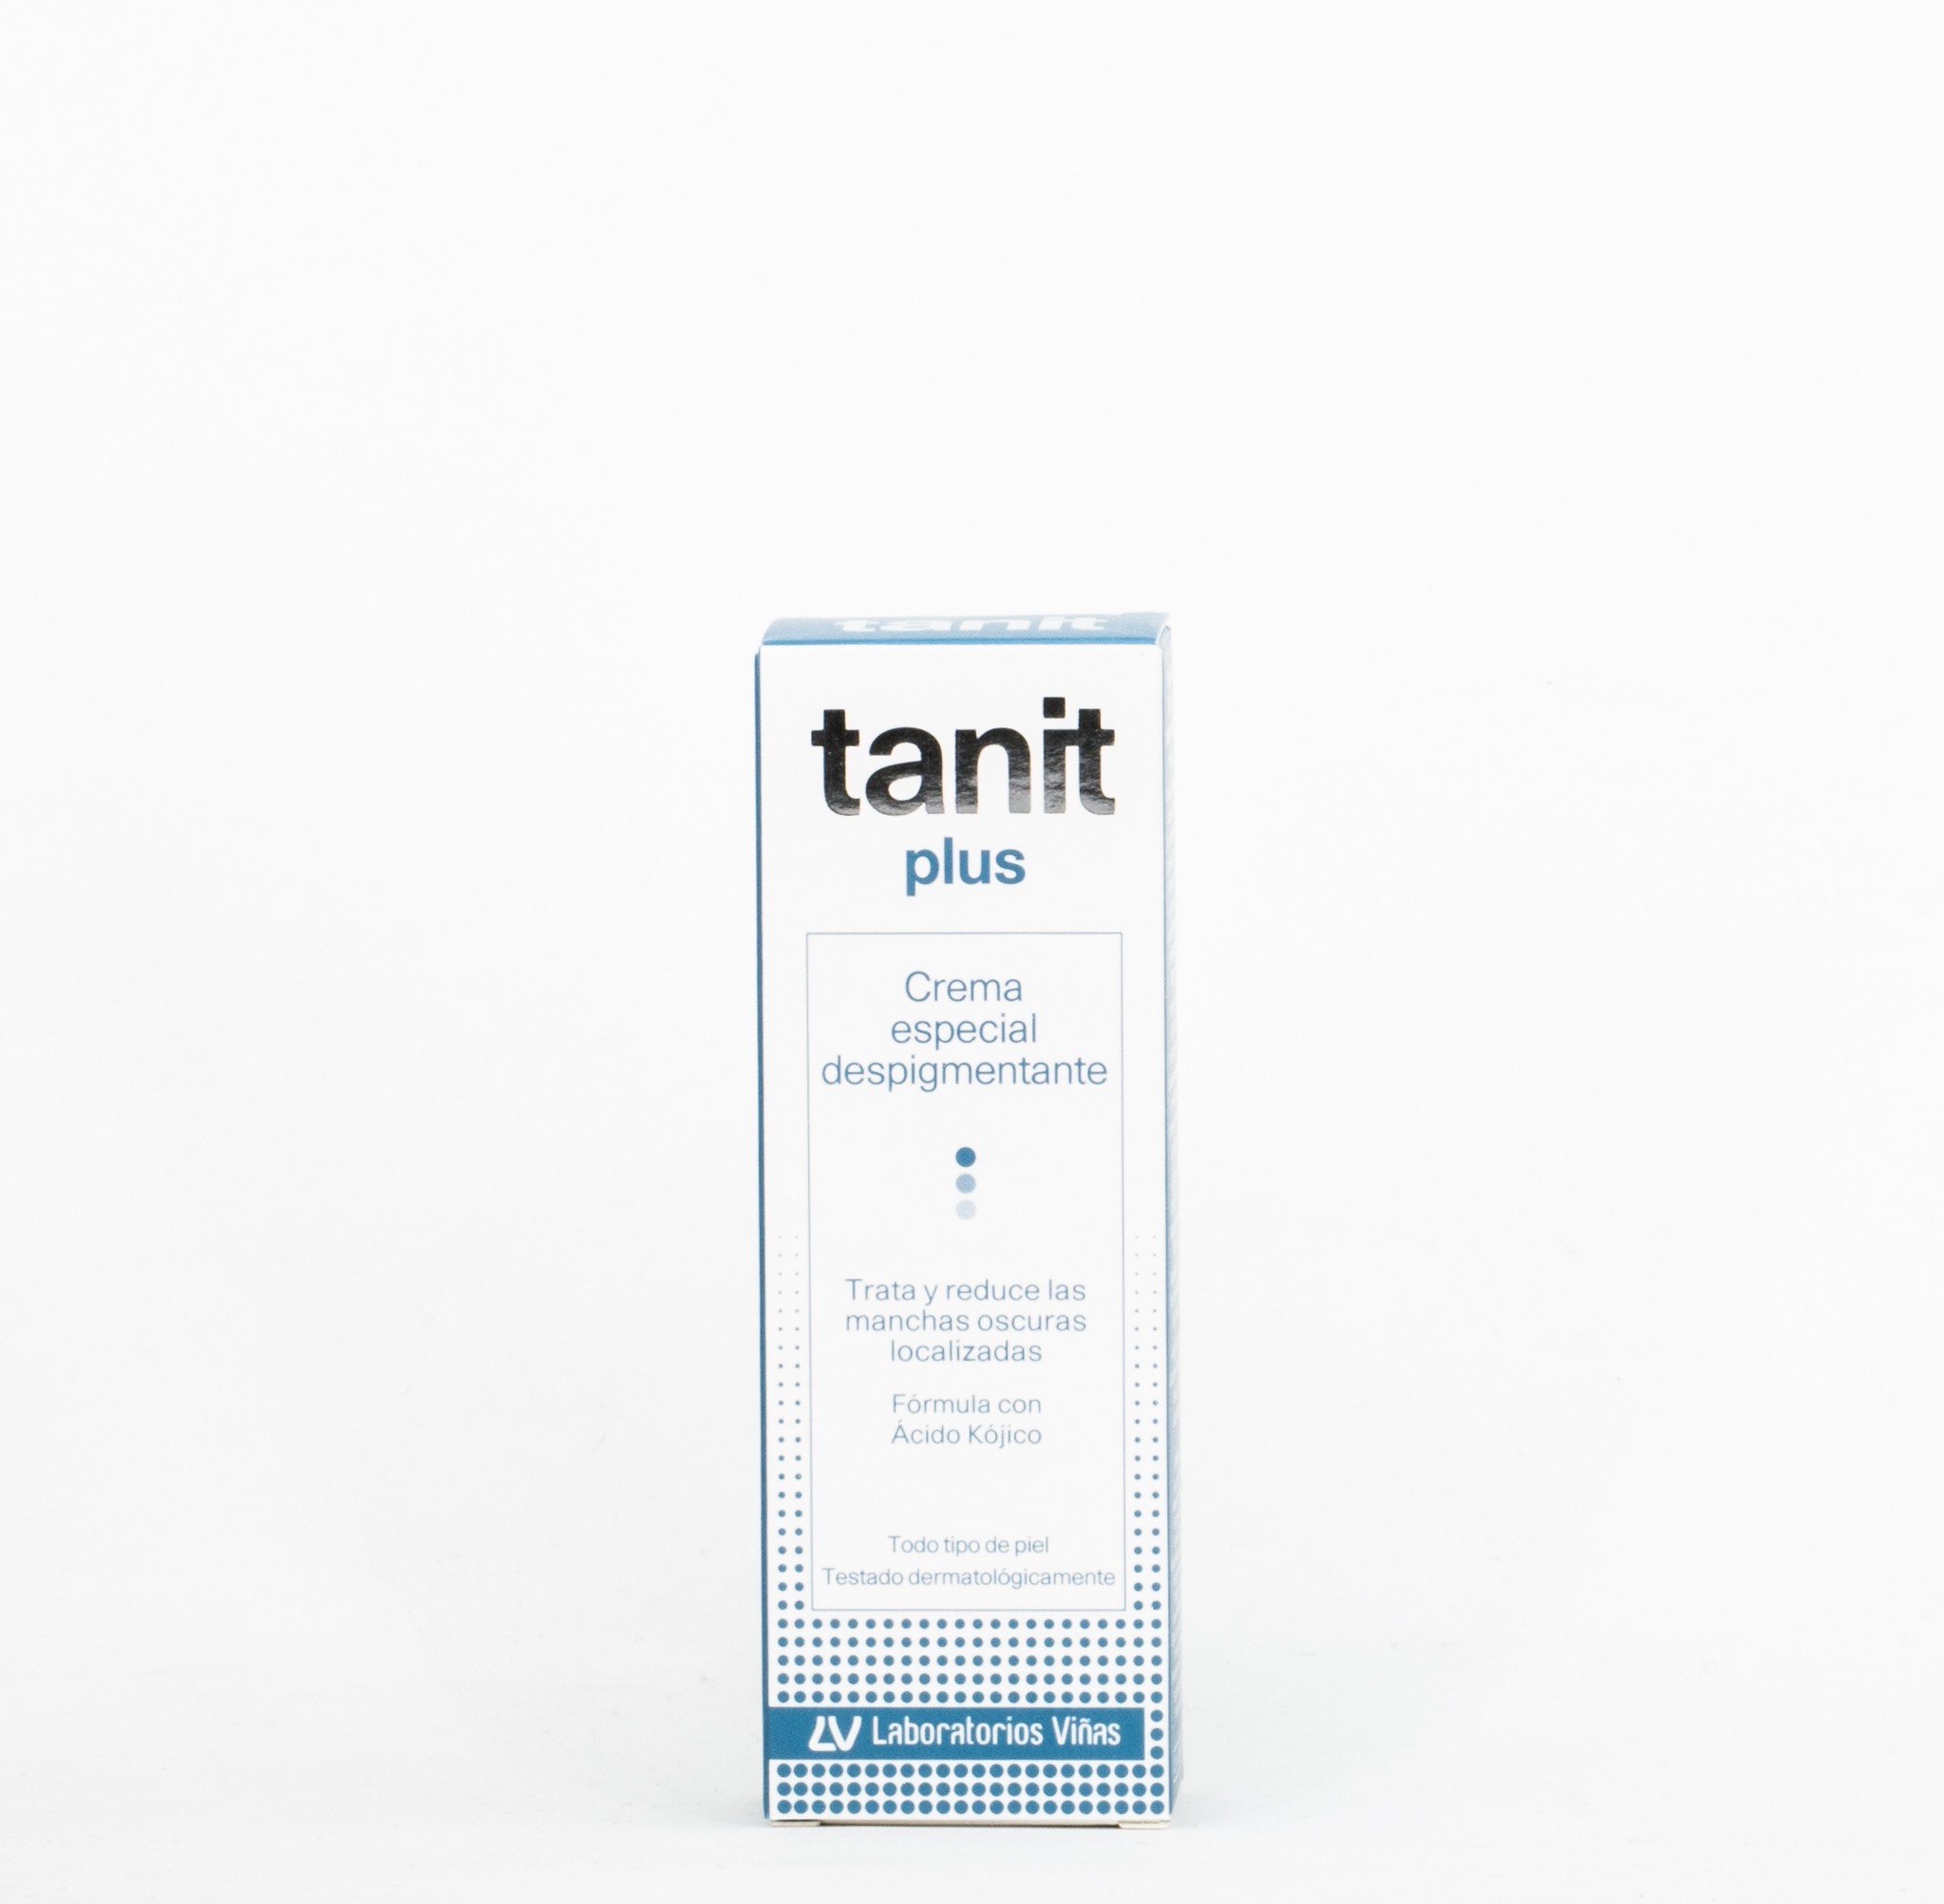 Tanit Plus Crema Especial Despigmentante, 15ml.